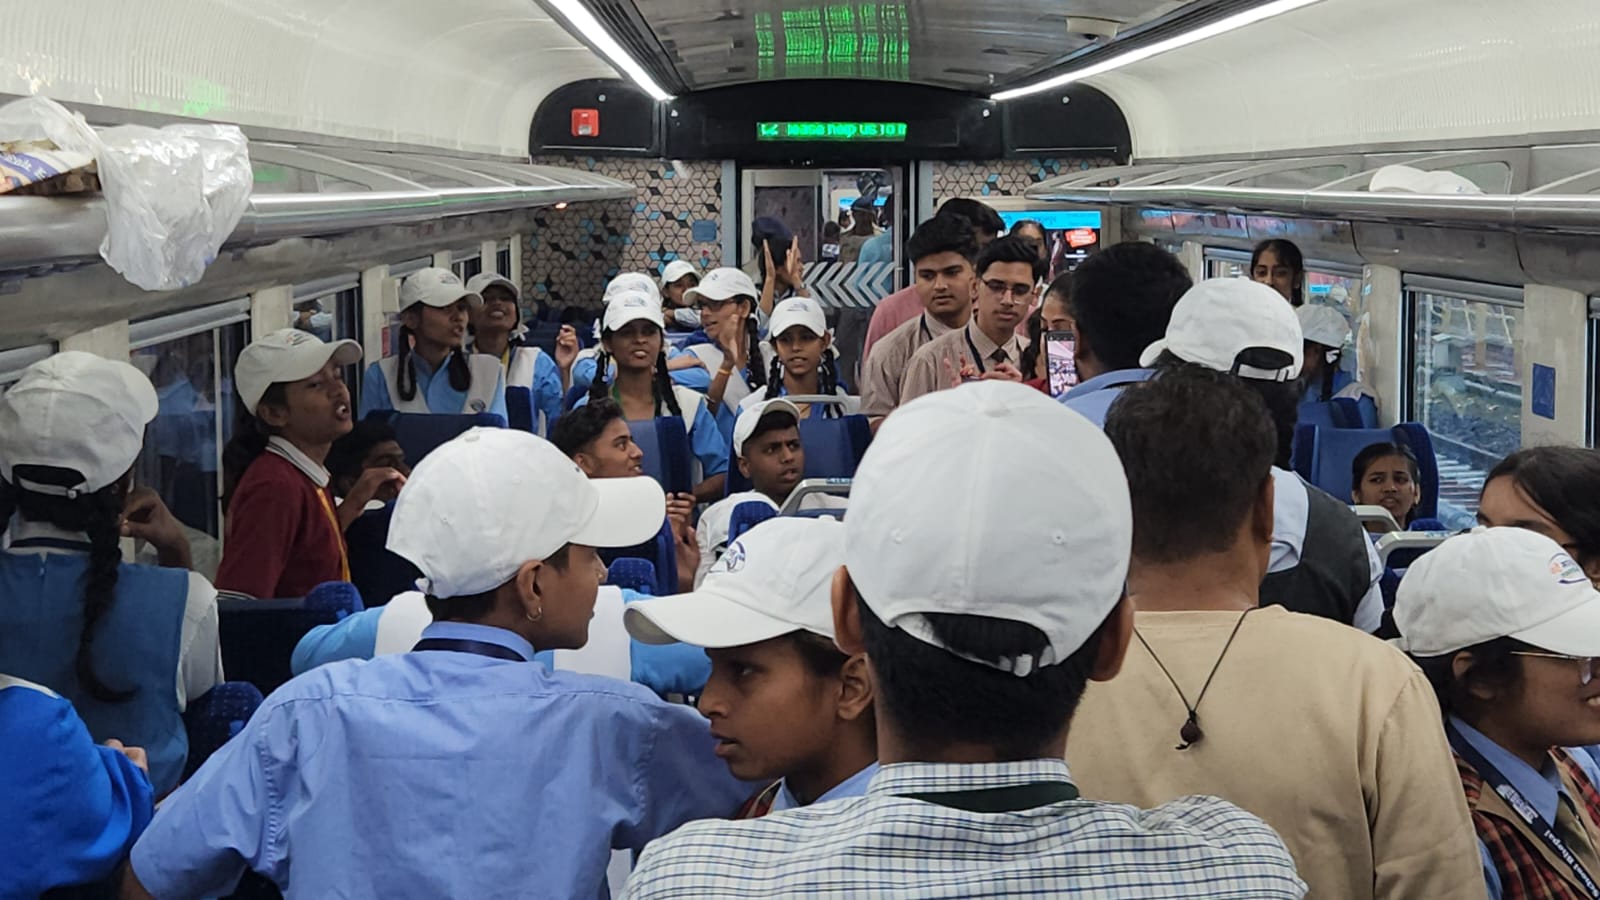 PM मोदी की MP को 2 और बड़ी सौगात, वंदे भारत ट्रेन को दिखाई हरी झंड़ी, RKMP स्टेशन पर बच्चों से भी की मुलाकात, लोगों ने कुछ यूं जाहिर की खुशी, देखें वीडियो